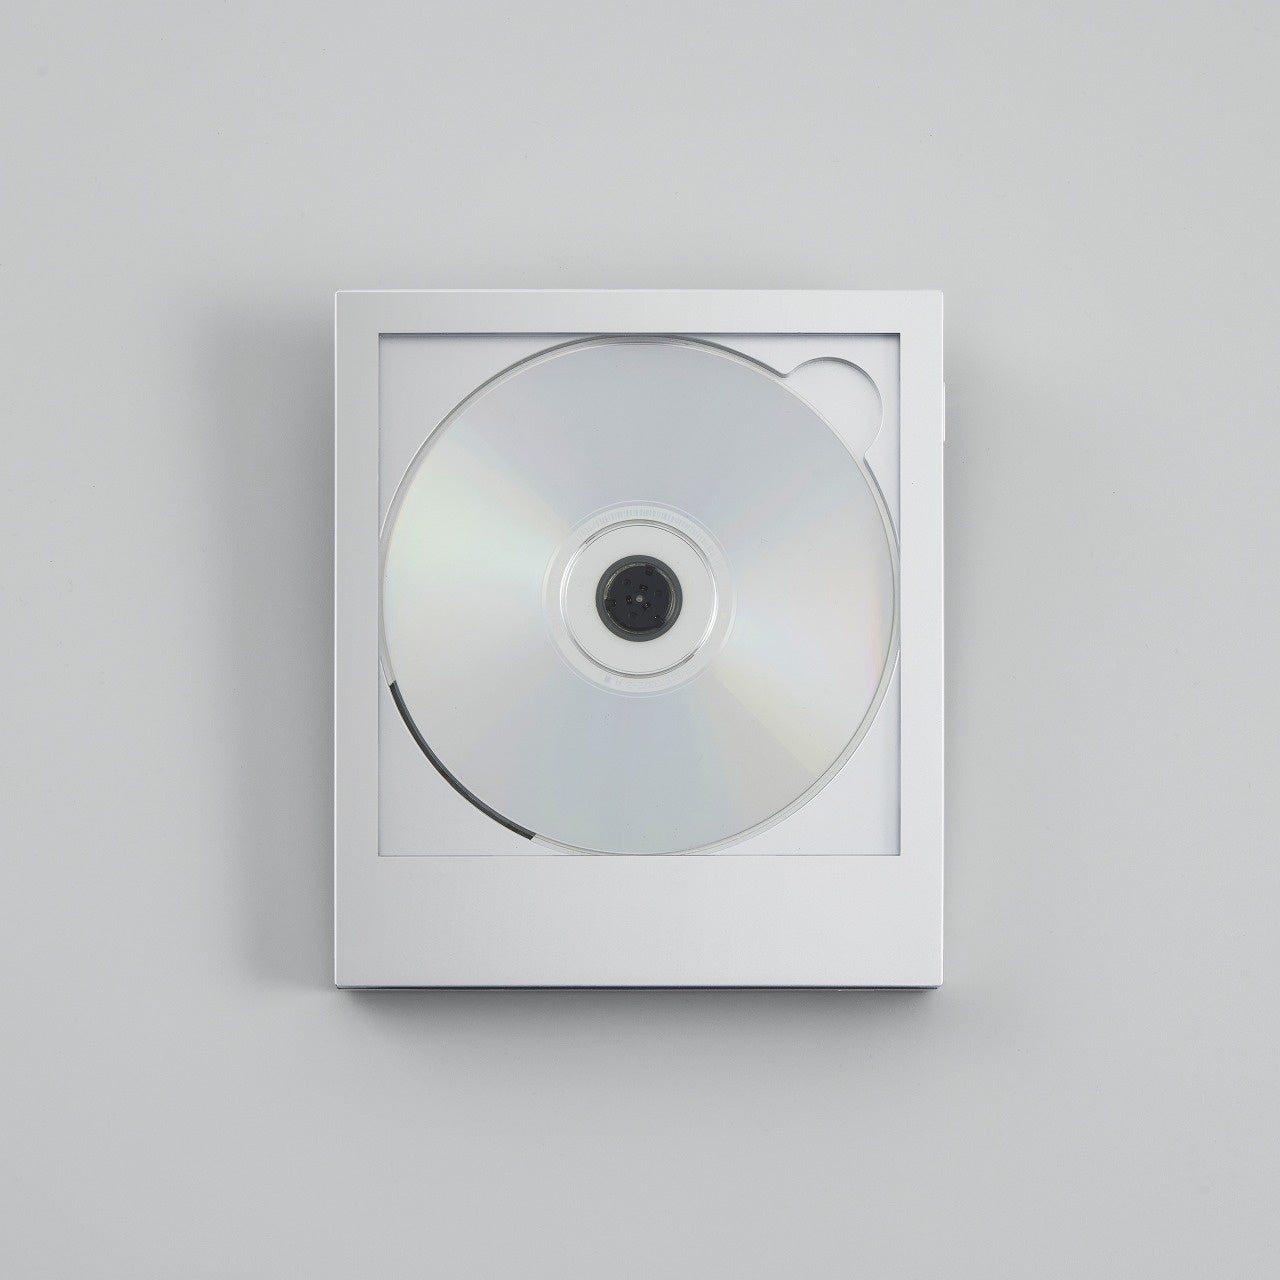 【二子玉川 蔦屋家電】ジャケットを飾れるCDプレーヤー Instant Disk Audio-CP1 限定カラー”Silver” 3/28(火)販売スタート